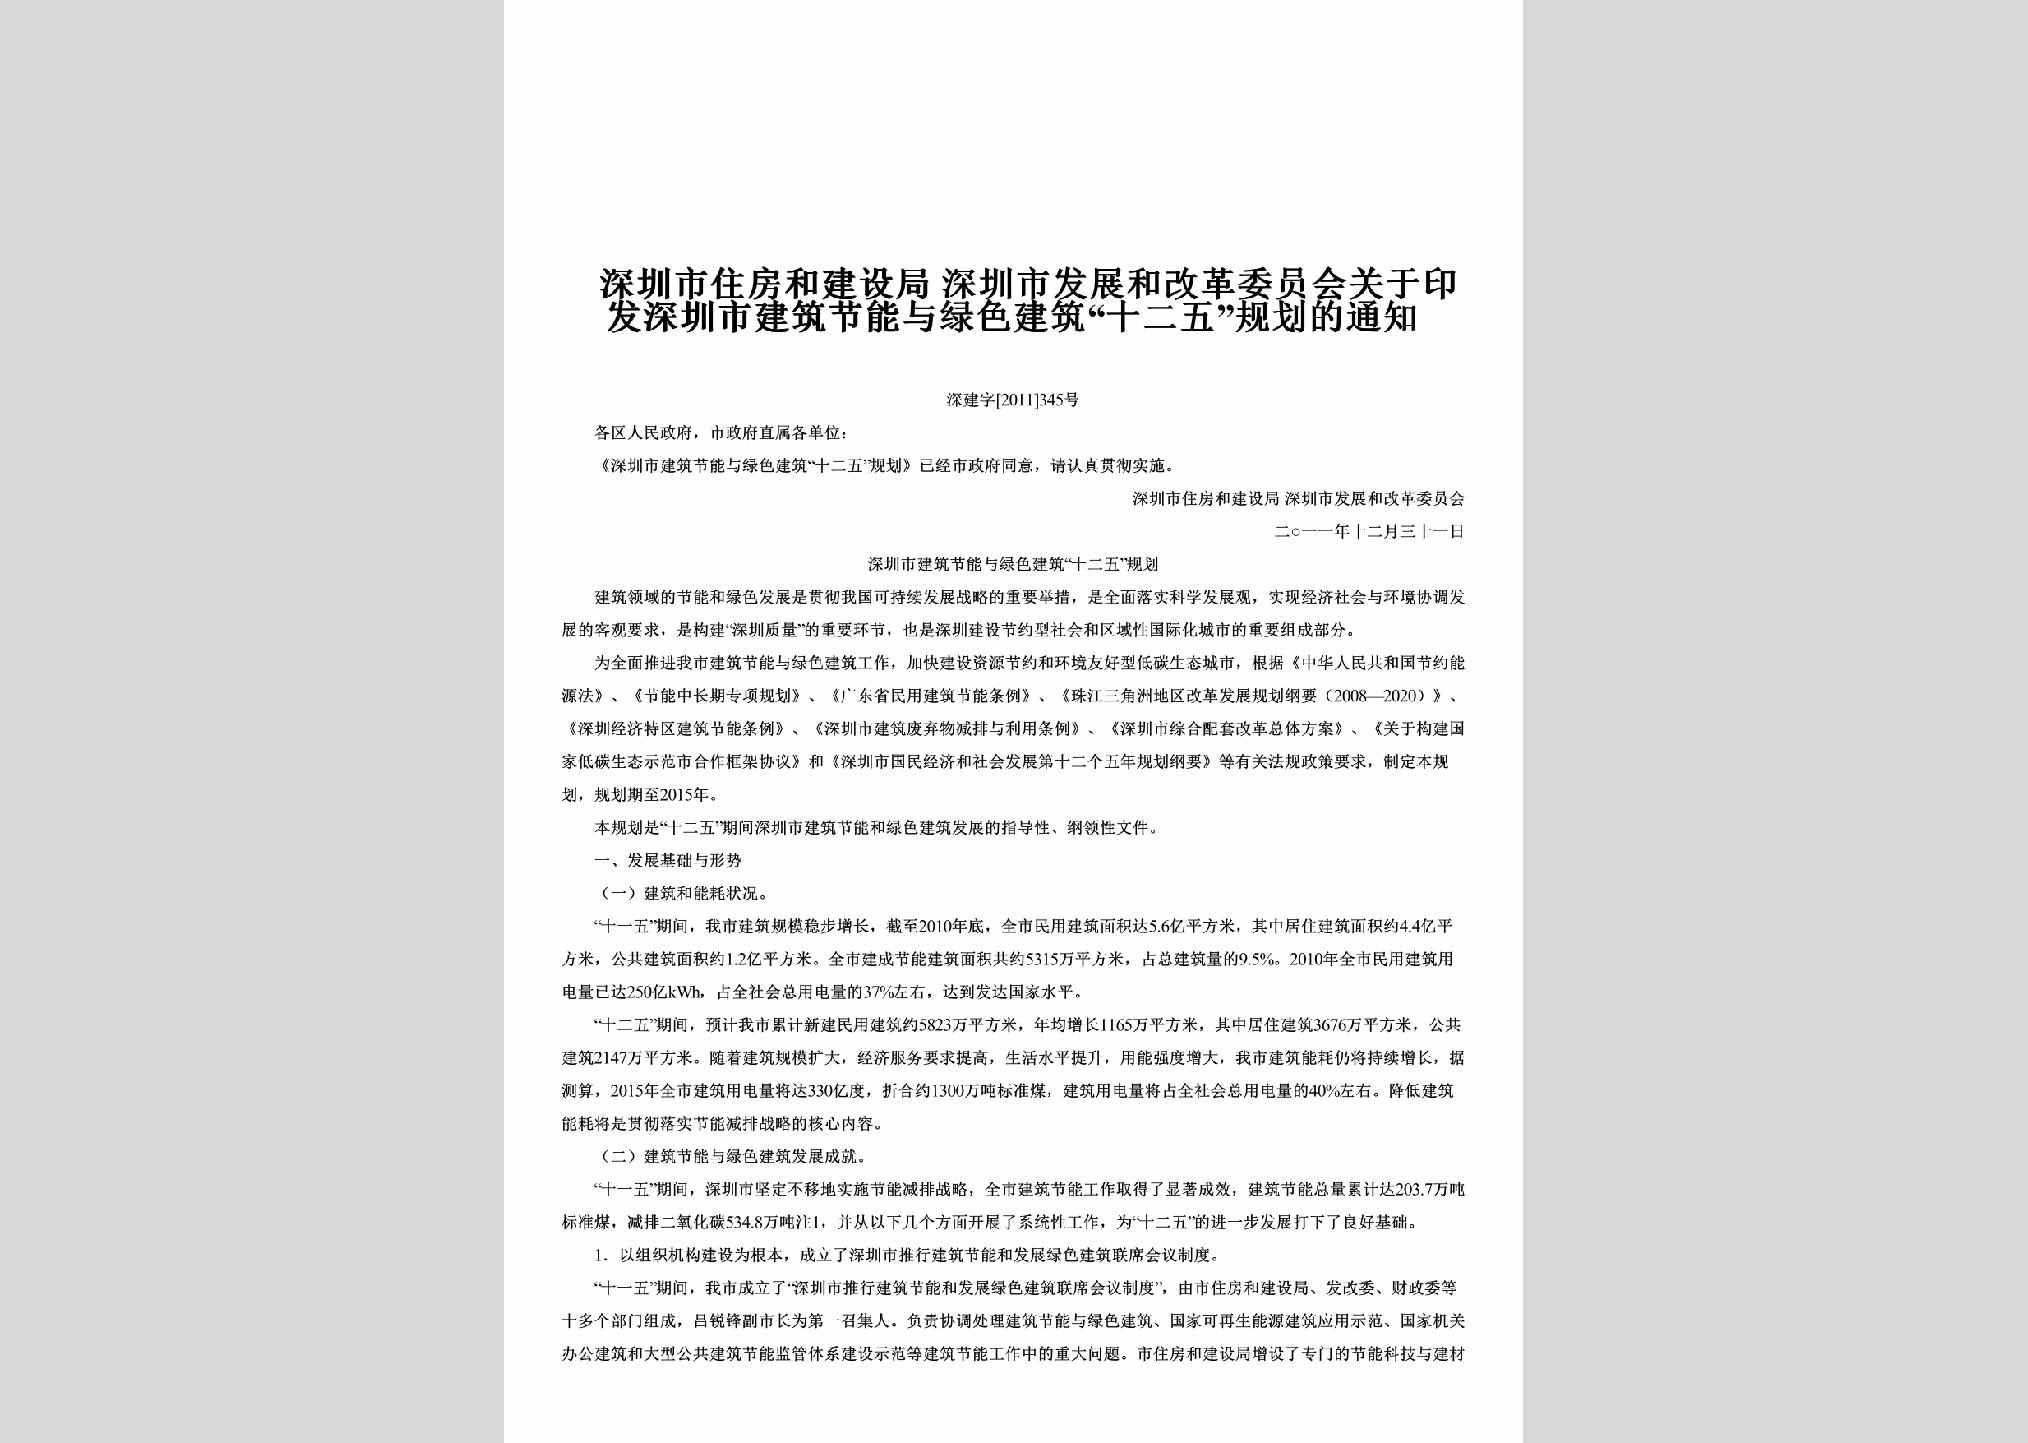 深建字[2011]345号：关于印发深圳市建筑节能与绿色建筑“十二五”规划的通知